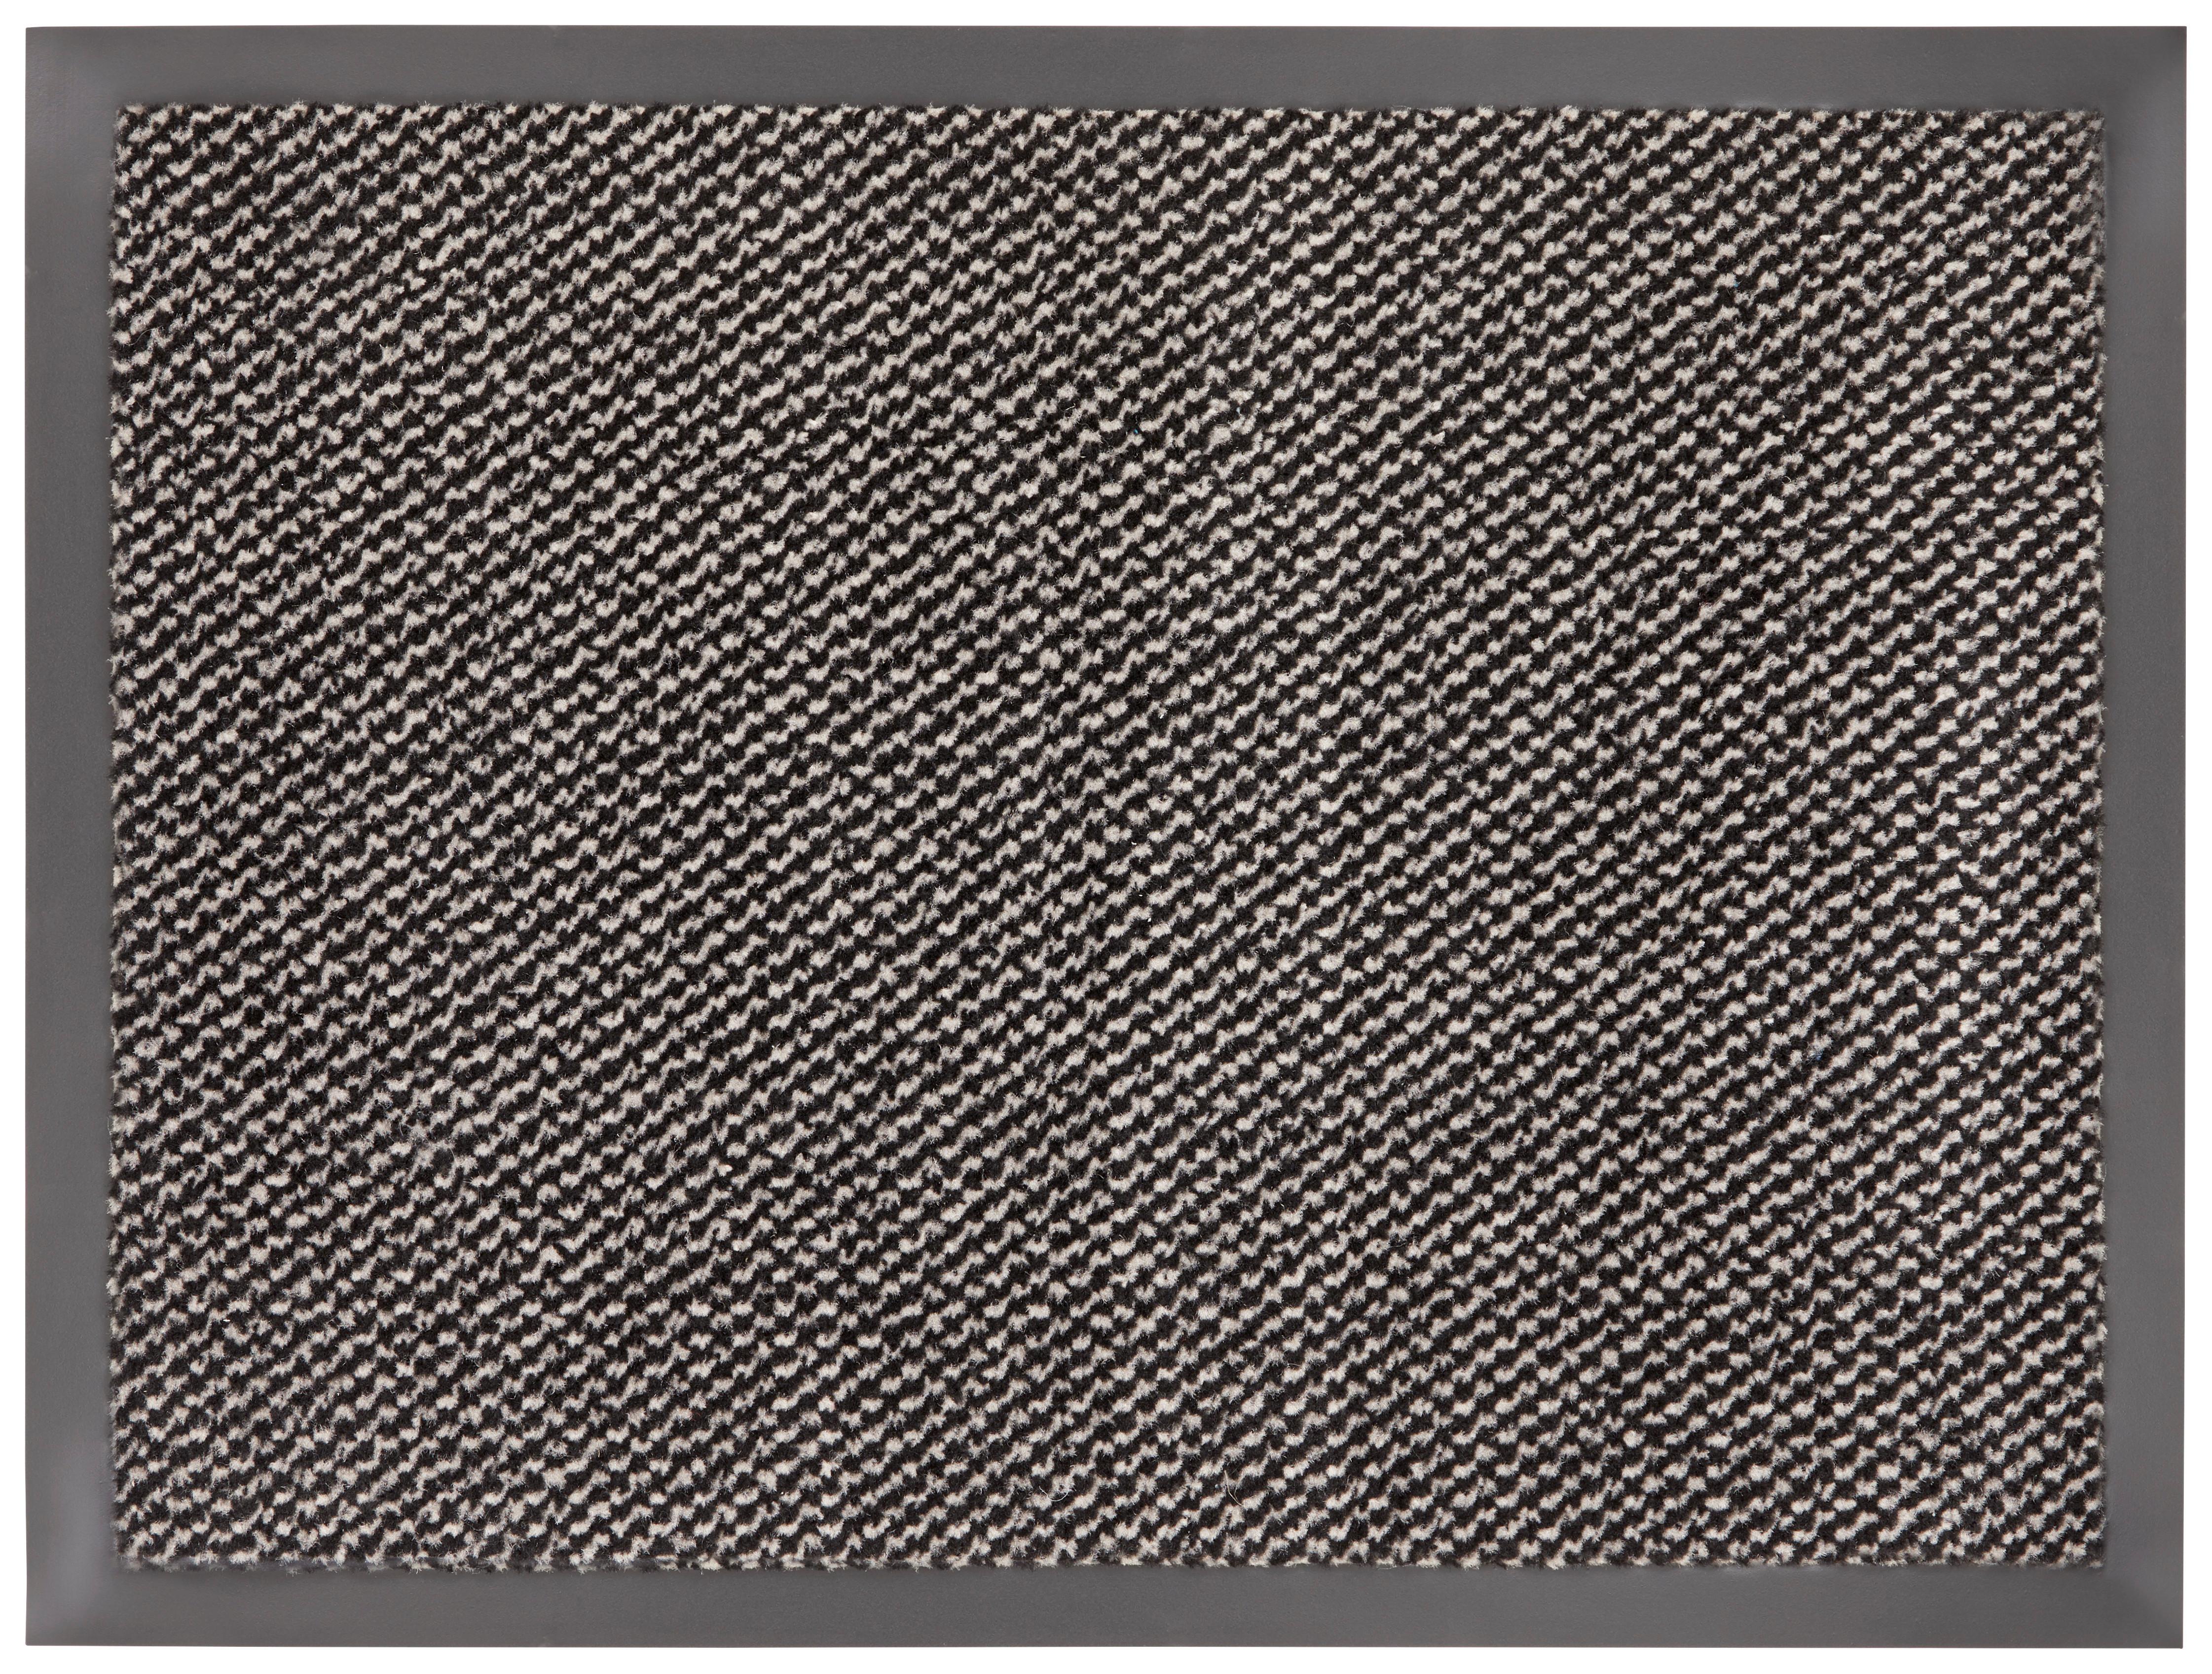 Dveřní Rohožka Hamptons 2, 60/80cm - černá/béžová, Konvenční, textil (60/80cm) - Modern Living